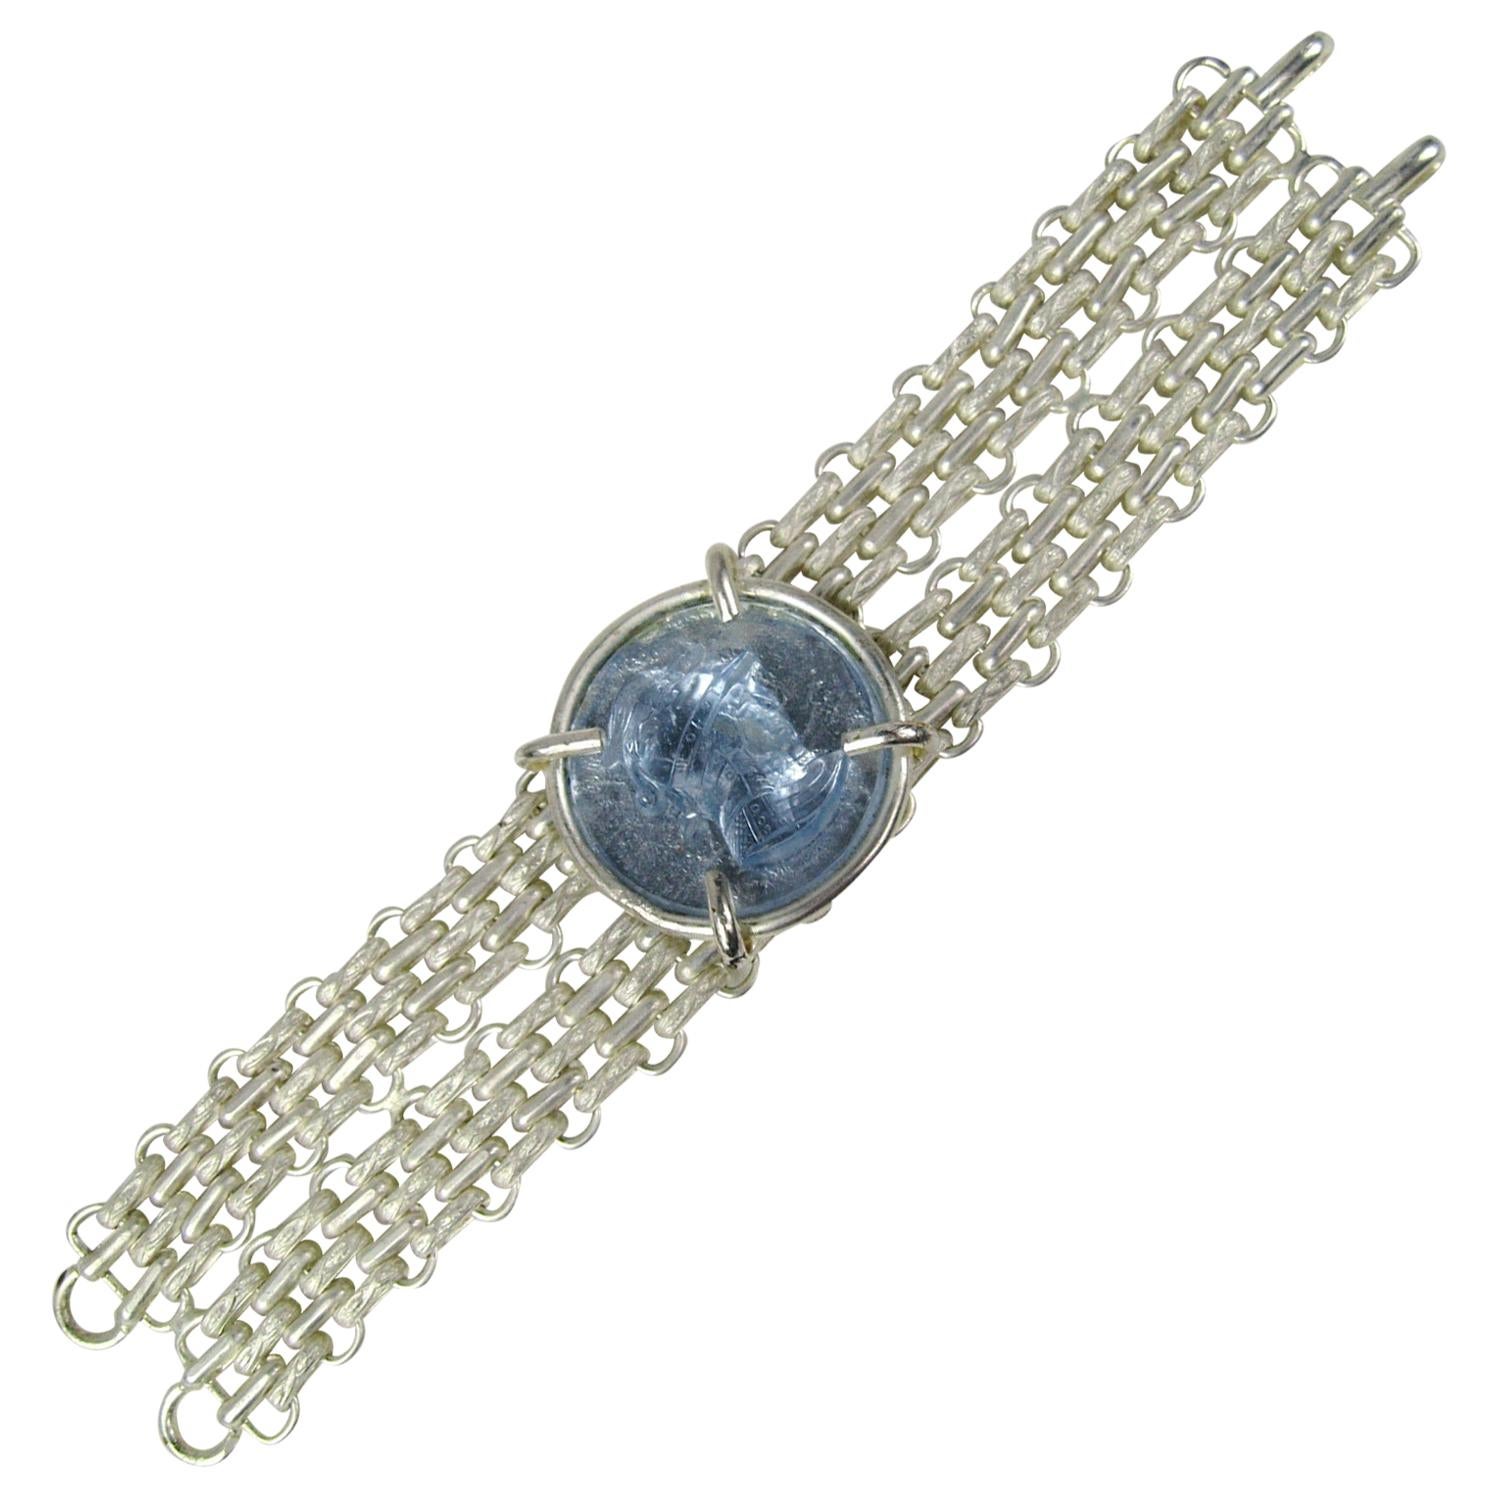 Dominique Aurientis Bracelet Silver Blue gripoix Glass Intaglio, 1980s For Sale